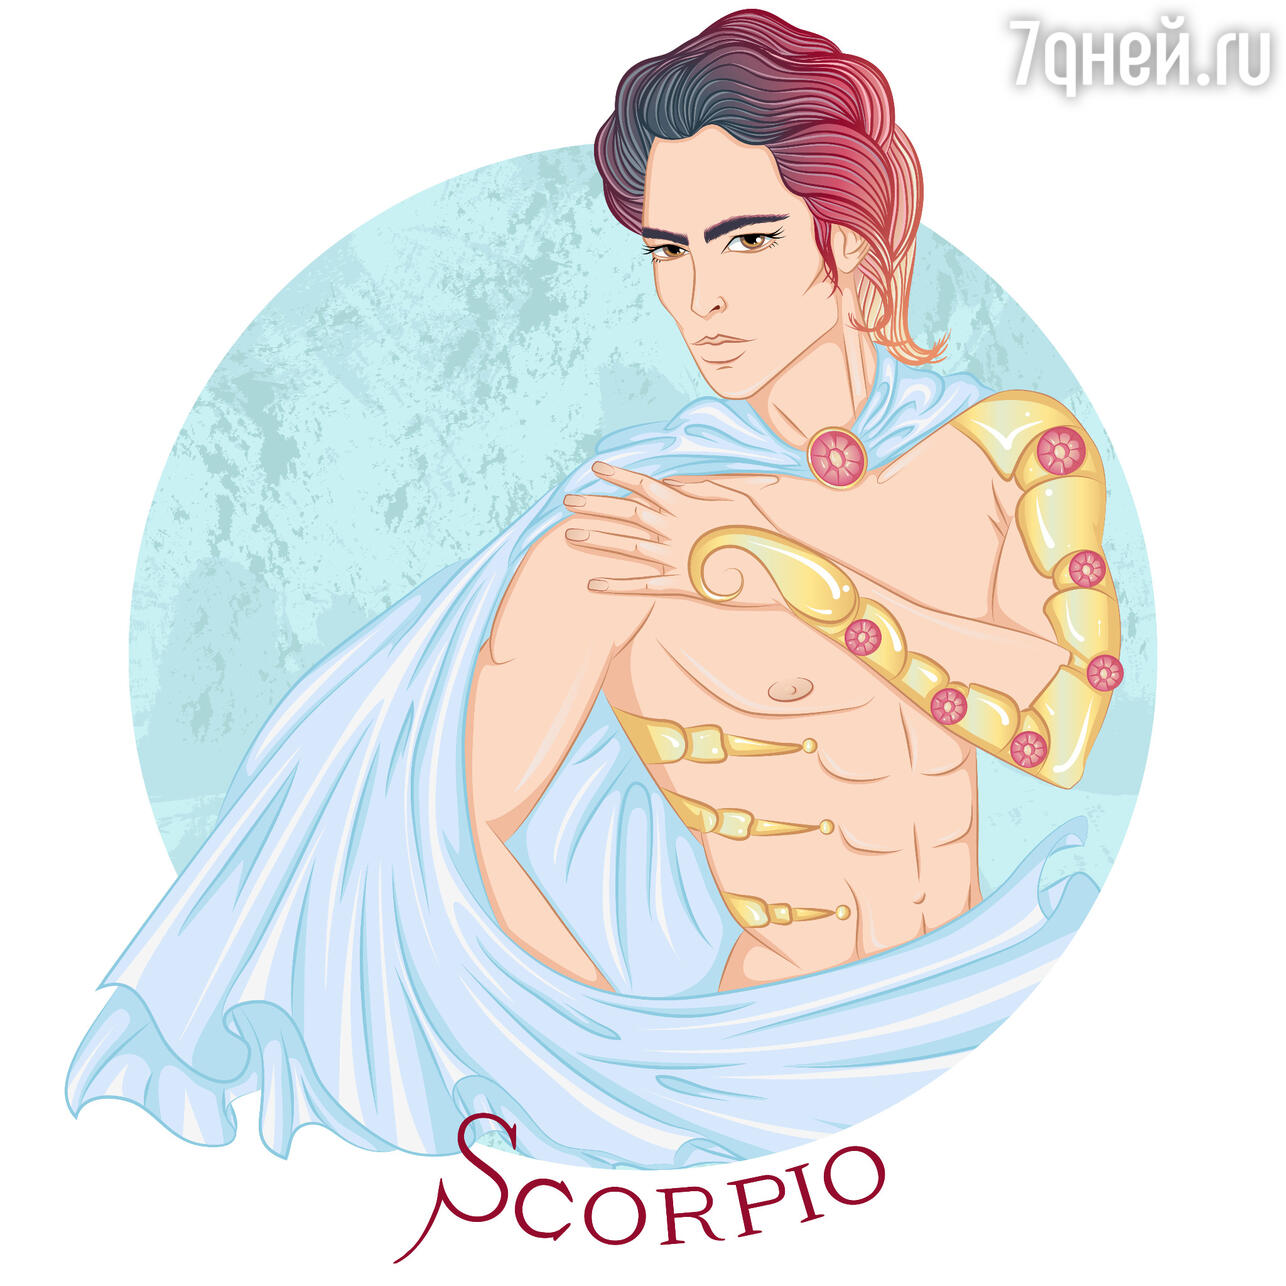 Скорпион - эротический и любовный гороскоп